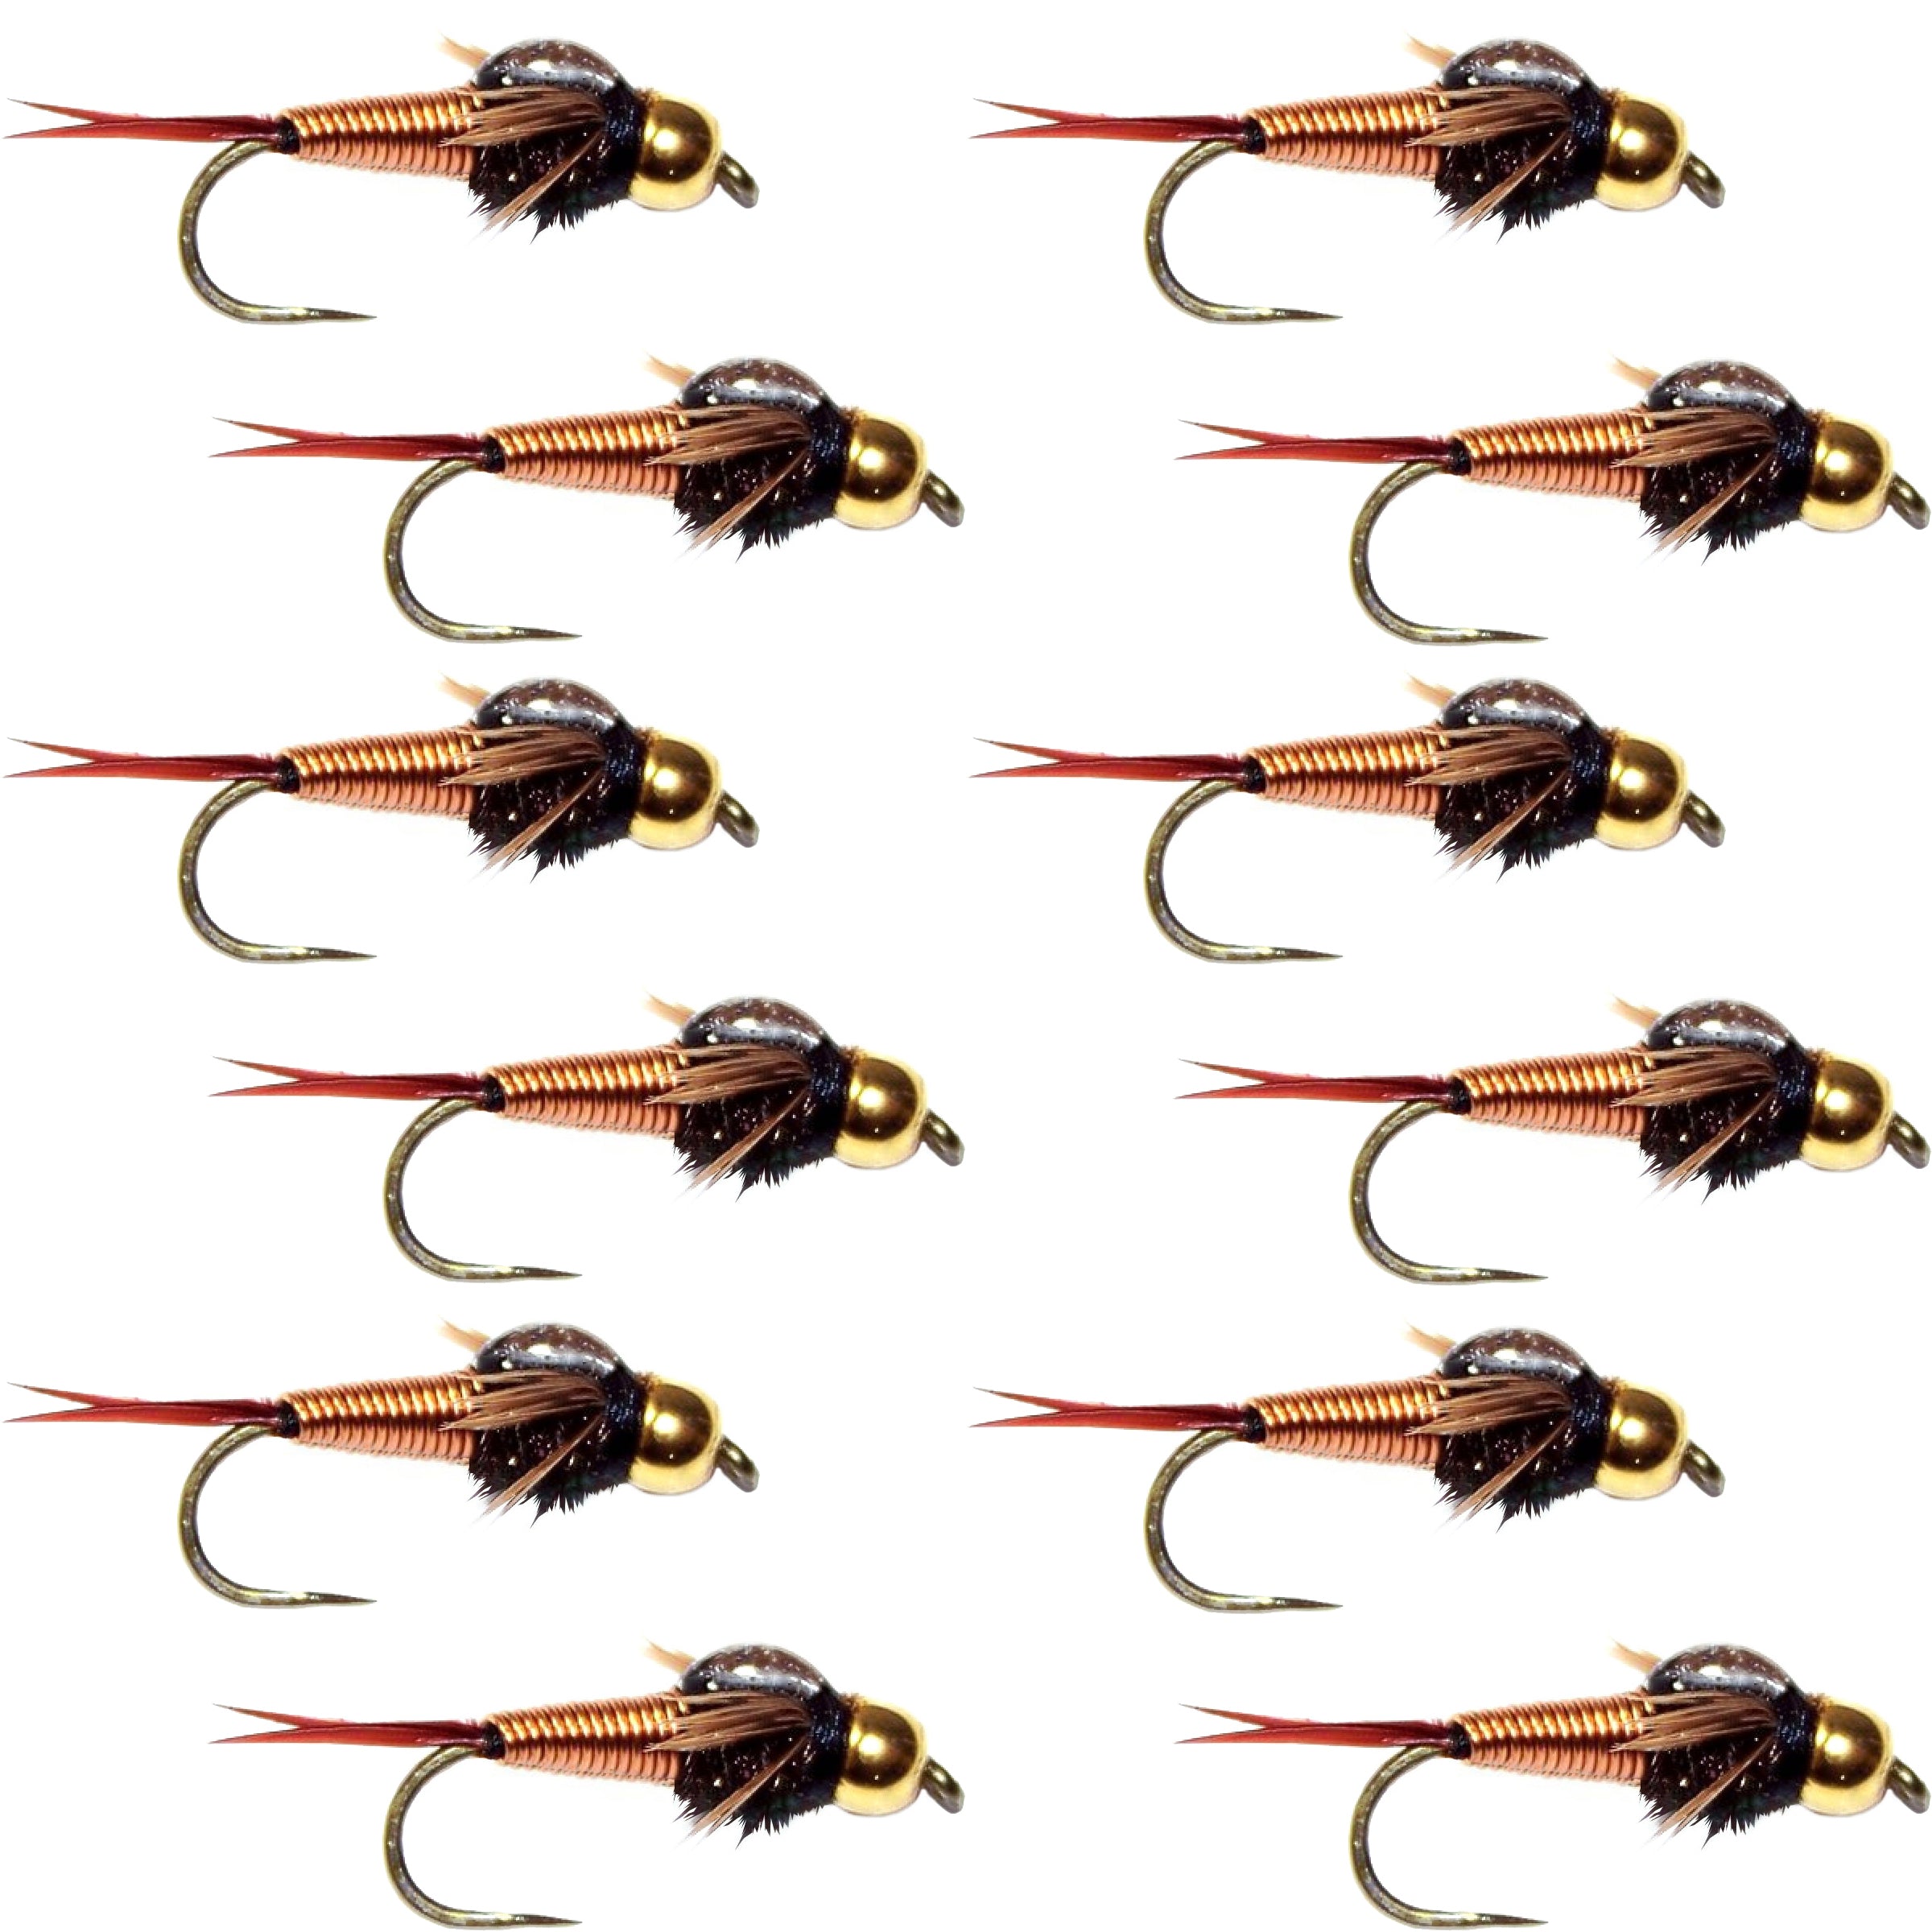 Barbless Bead Head Copper John Nymph Fly 1 Dozen  Fishing Flies -  Hook Size 12